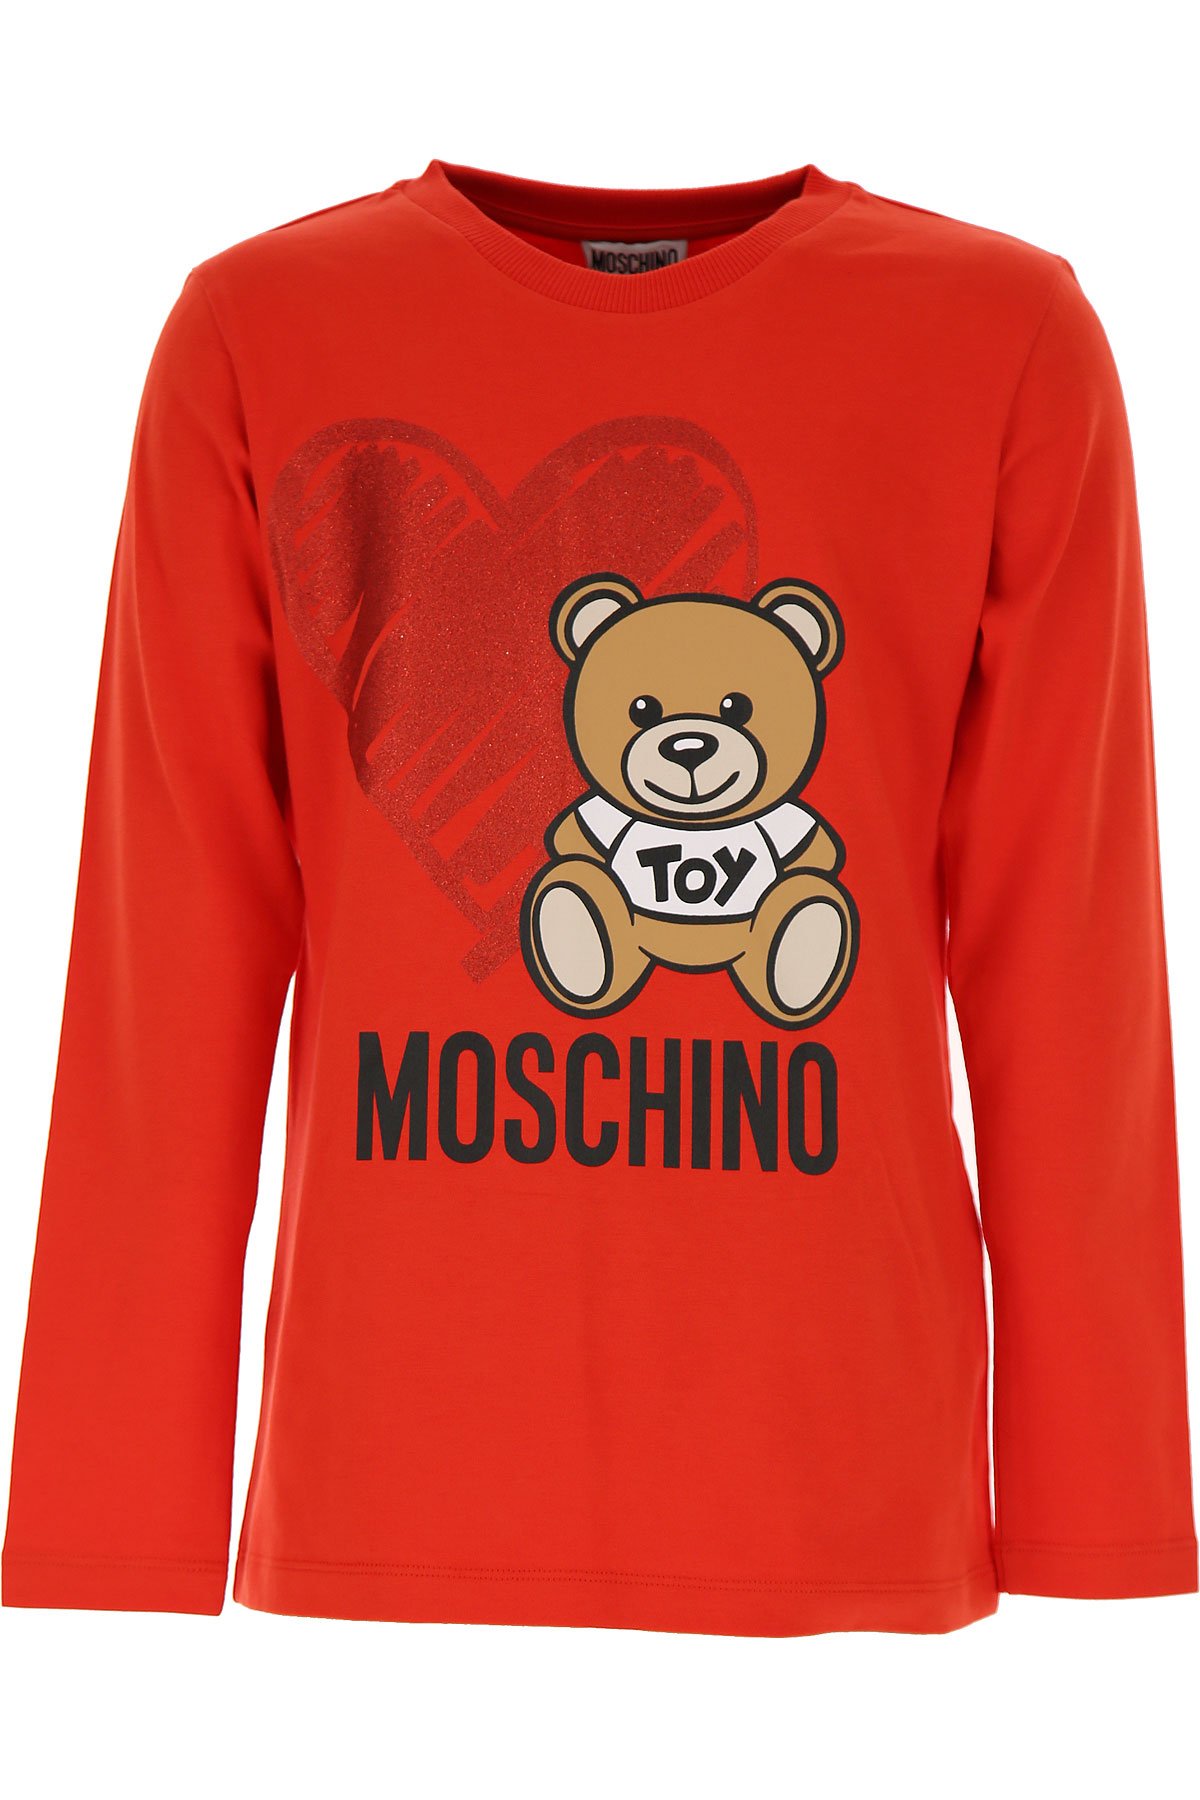 Moschino Kinder T-Shirt für Mädchen Günstig im Sale, Rot, Baumwolle, 2017, 10Y 14Y 4Y 5Y 6Y 8Y